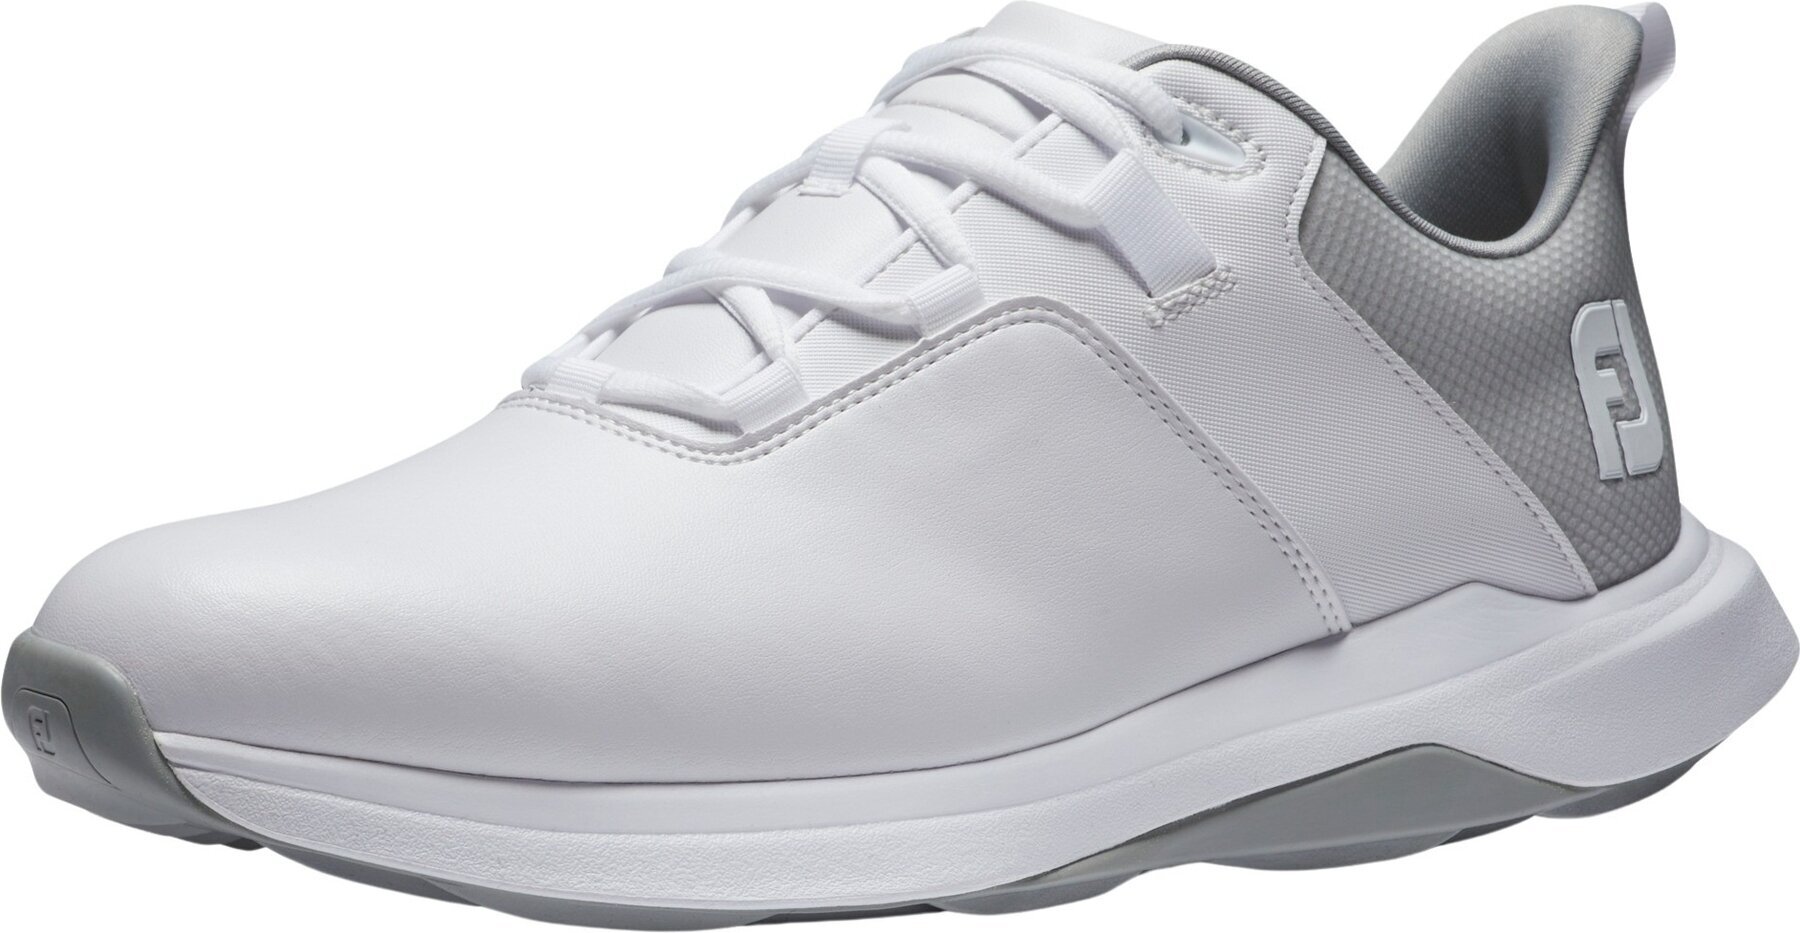 Chaussures de golf pour hommes Footjoy ProLite Mens Golf Shoes White/Grey 44,5